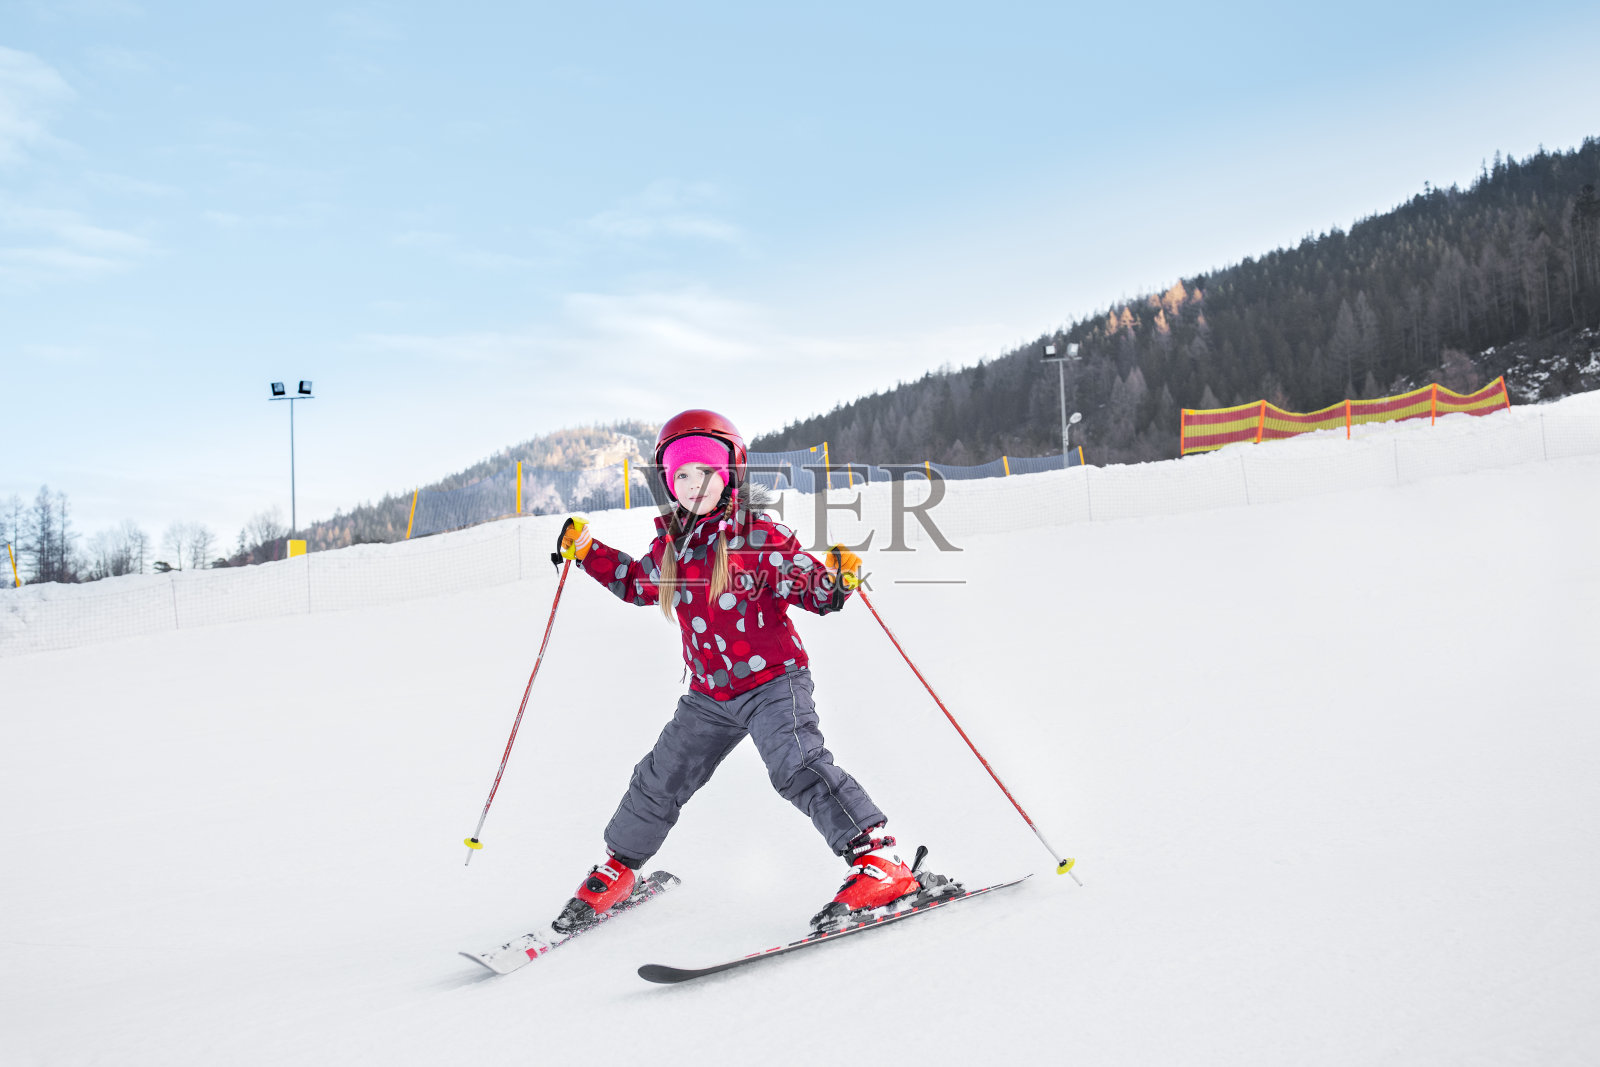 那孩子正在下山滑雪。照片摄影图片